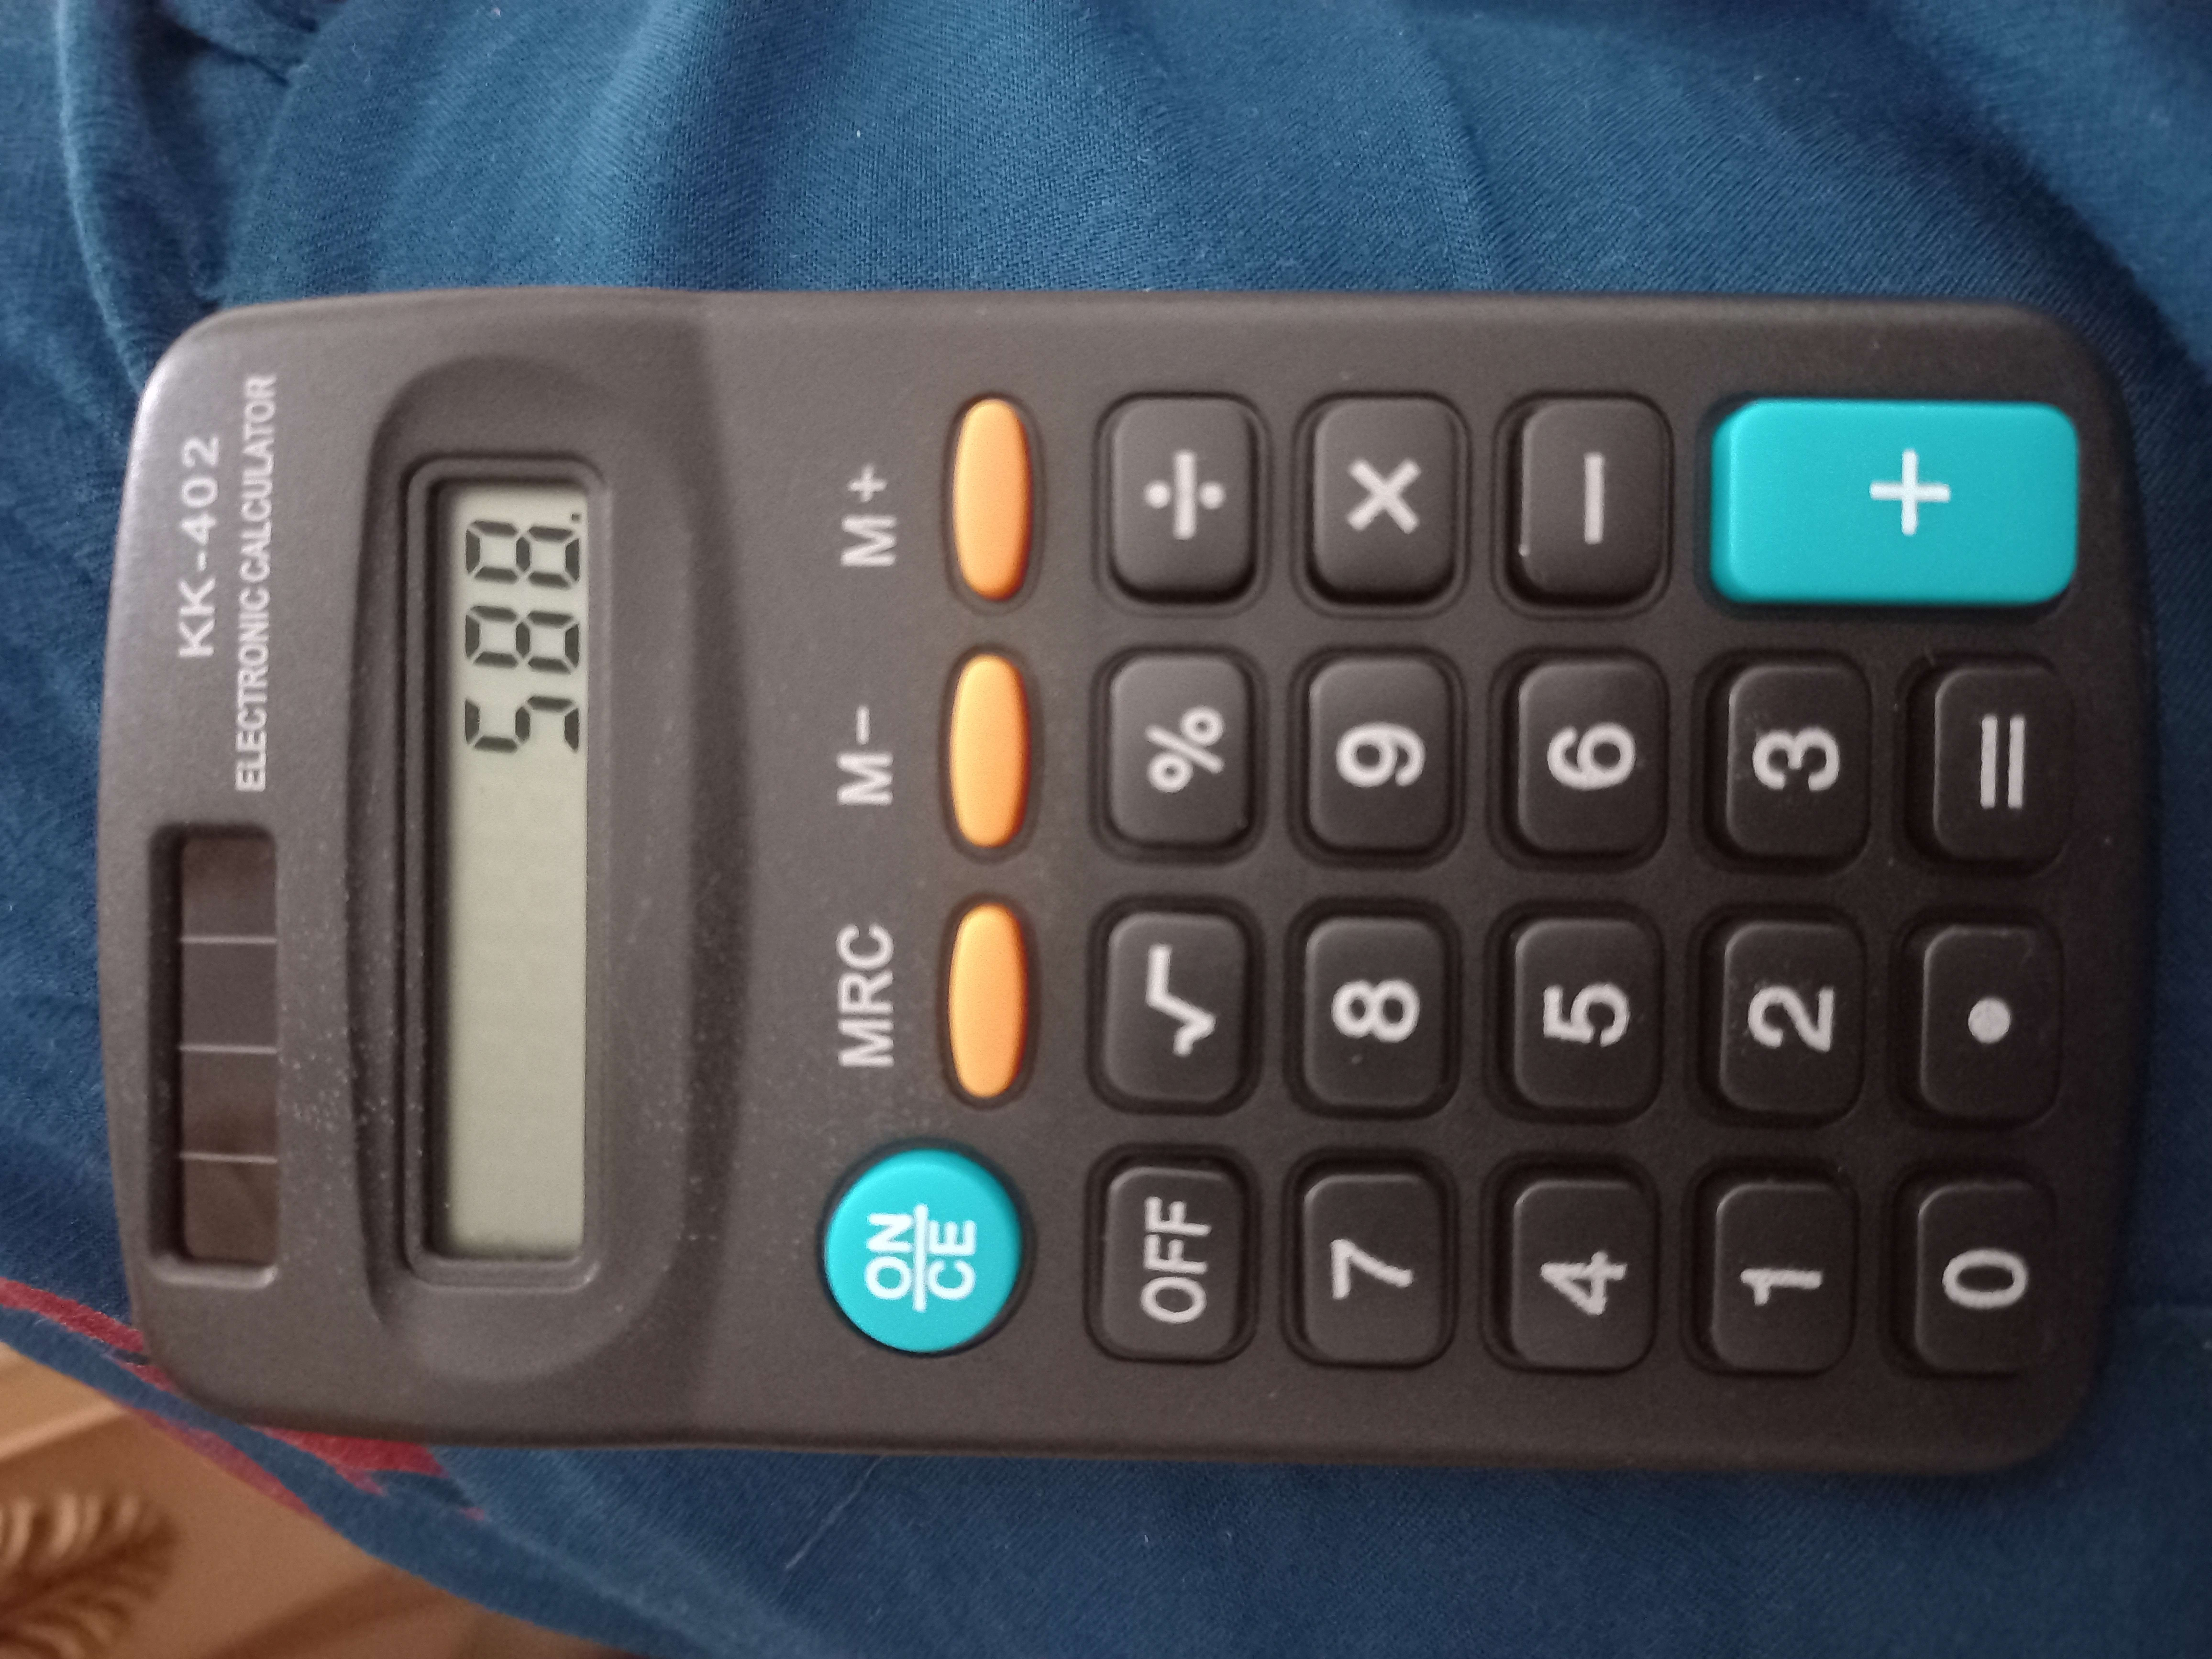 Фотография покупателя товара Калькулятор карманный, 8 - разрядный, KK - 402, работает от батарейки